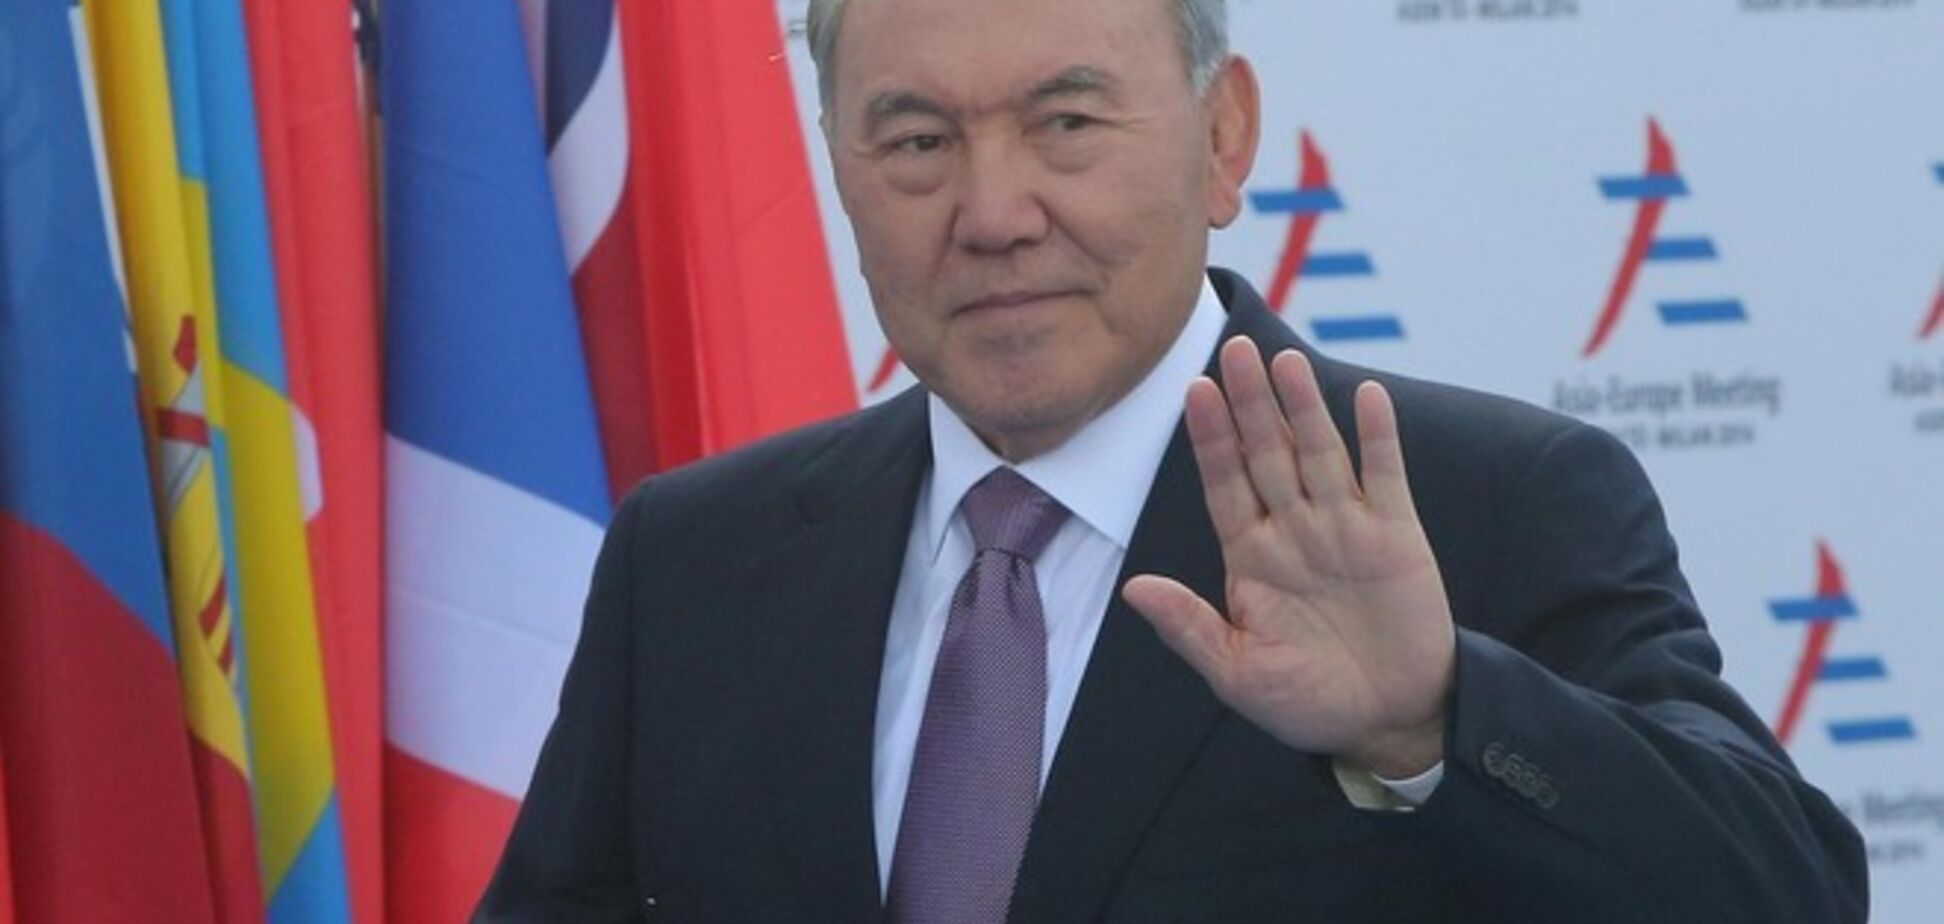 ЗМІ дізналися про швидкий приїзд президента Казахстану в Україну